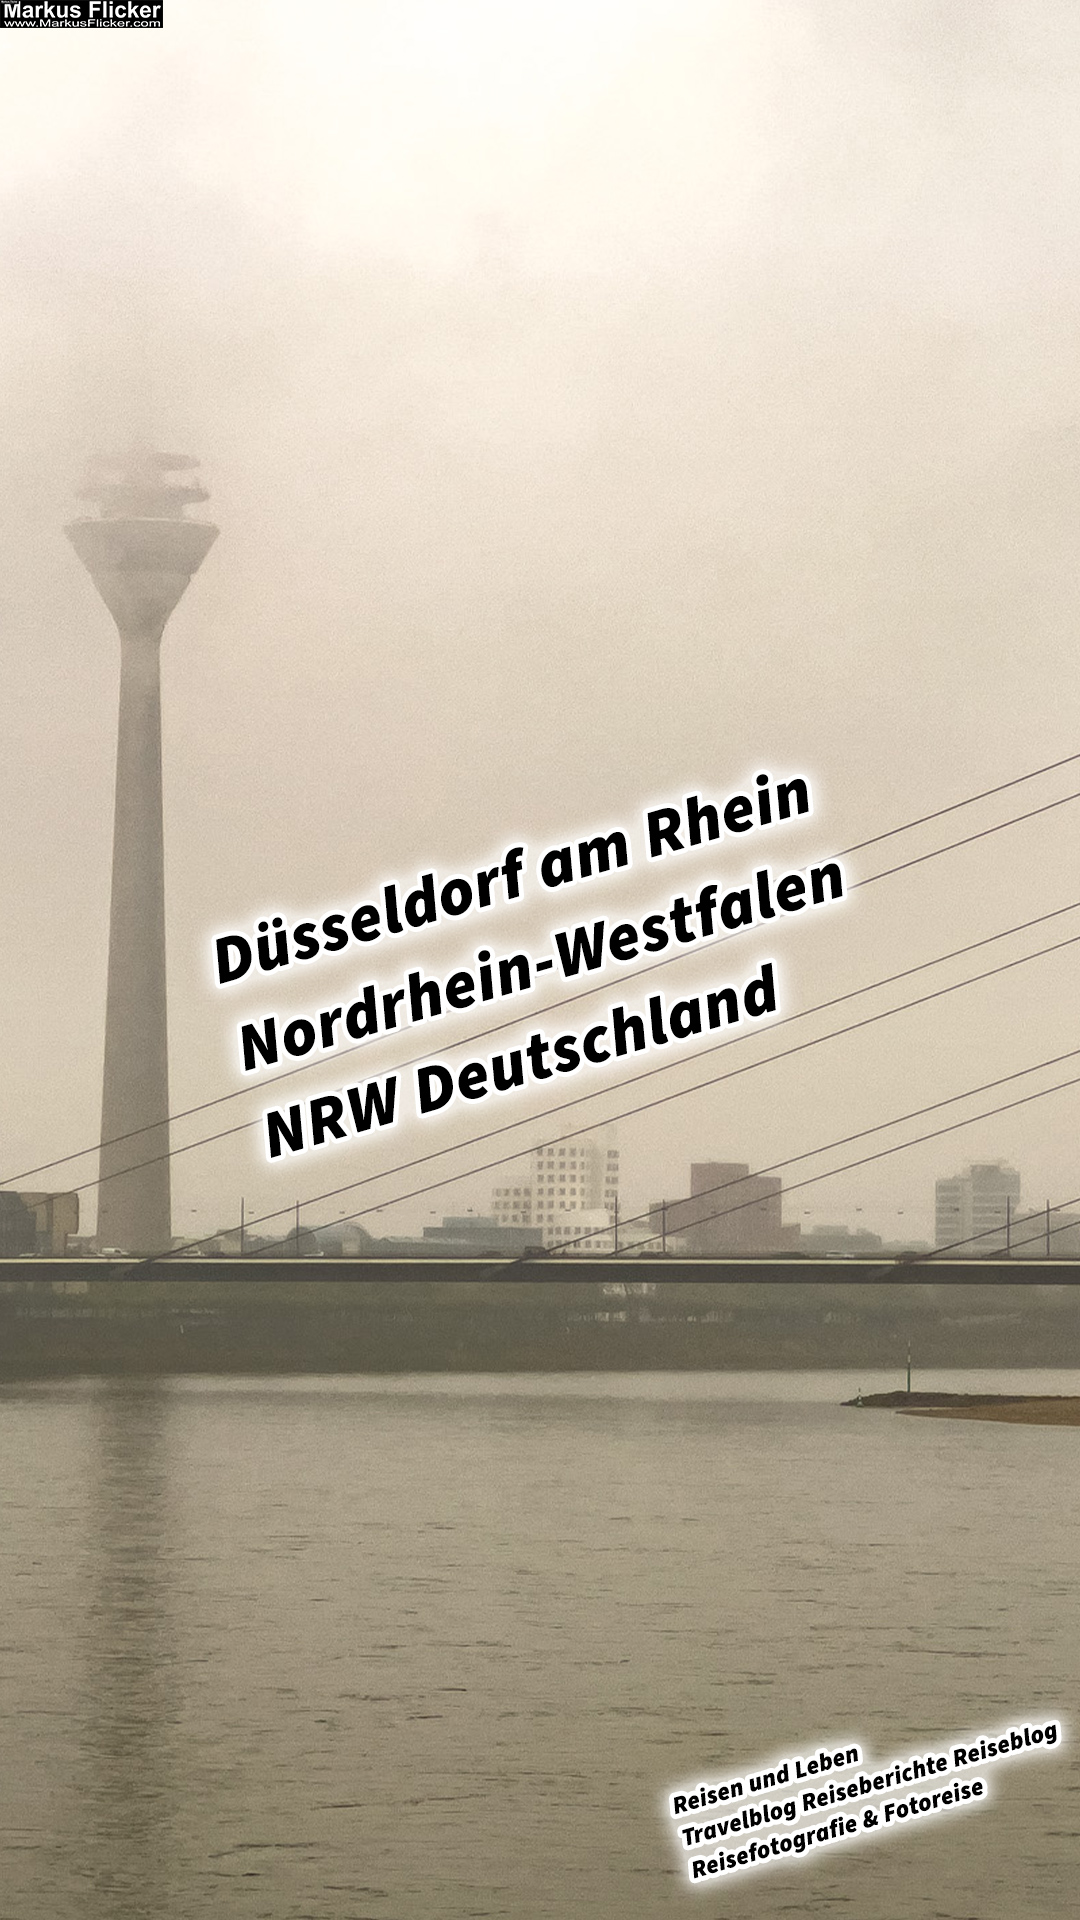 Düsseldorf am Rhein Nordrhein-Westfalen NRW Deutschland #visitduesseldorf